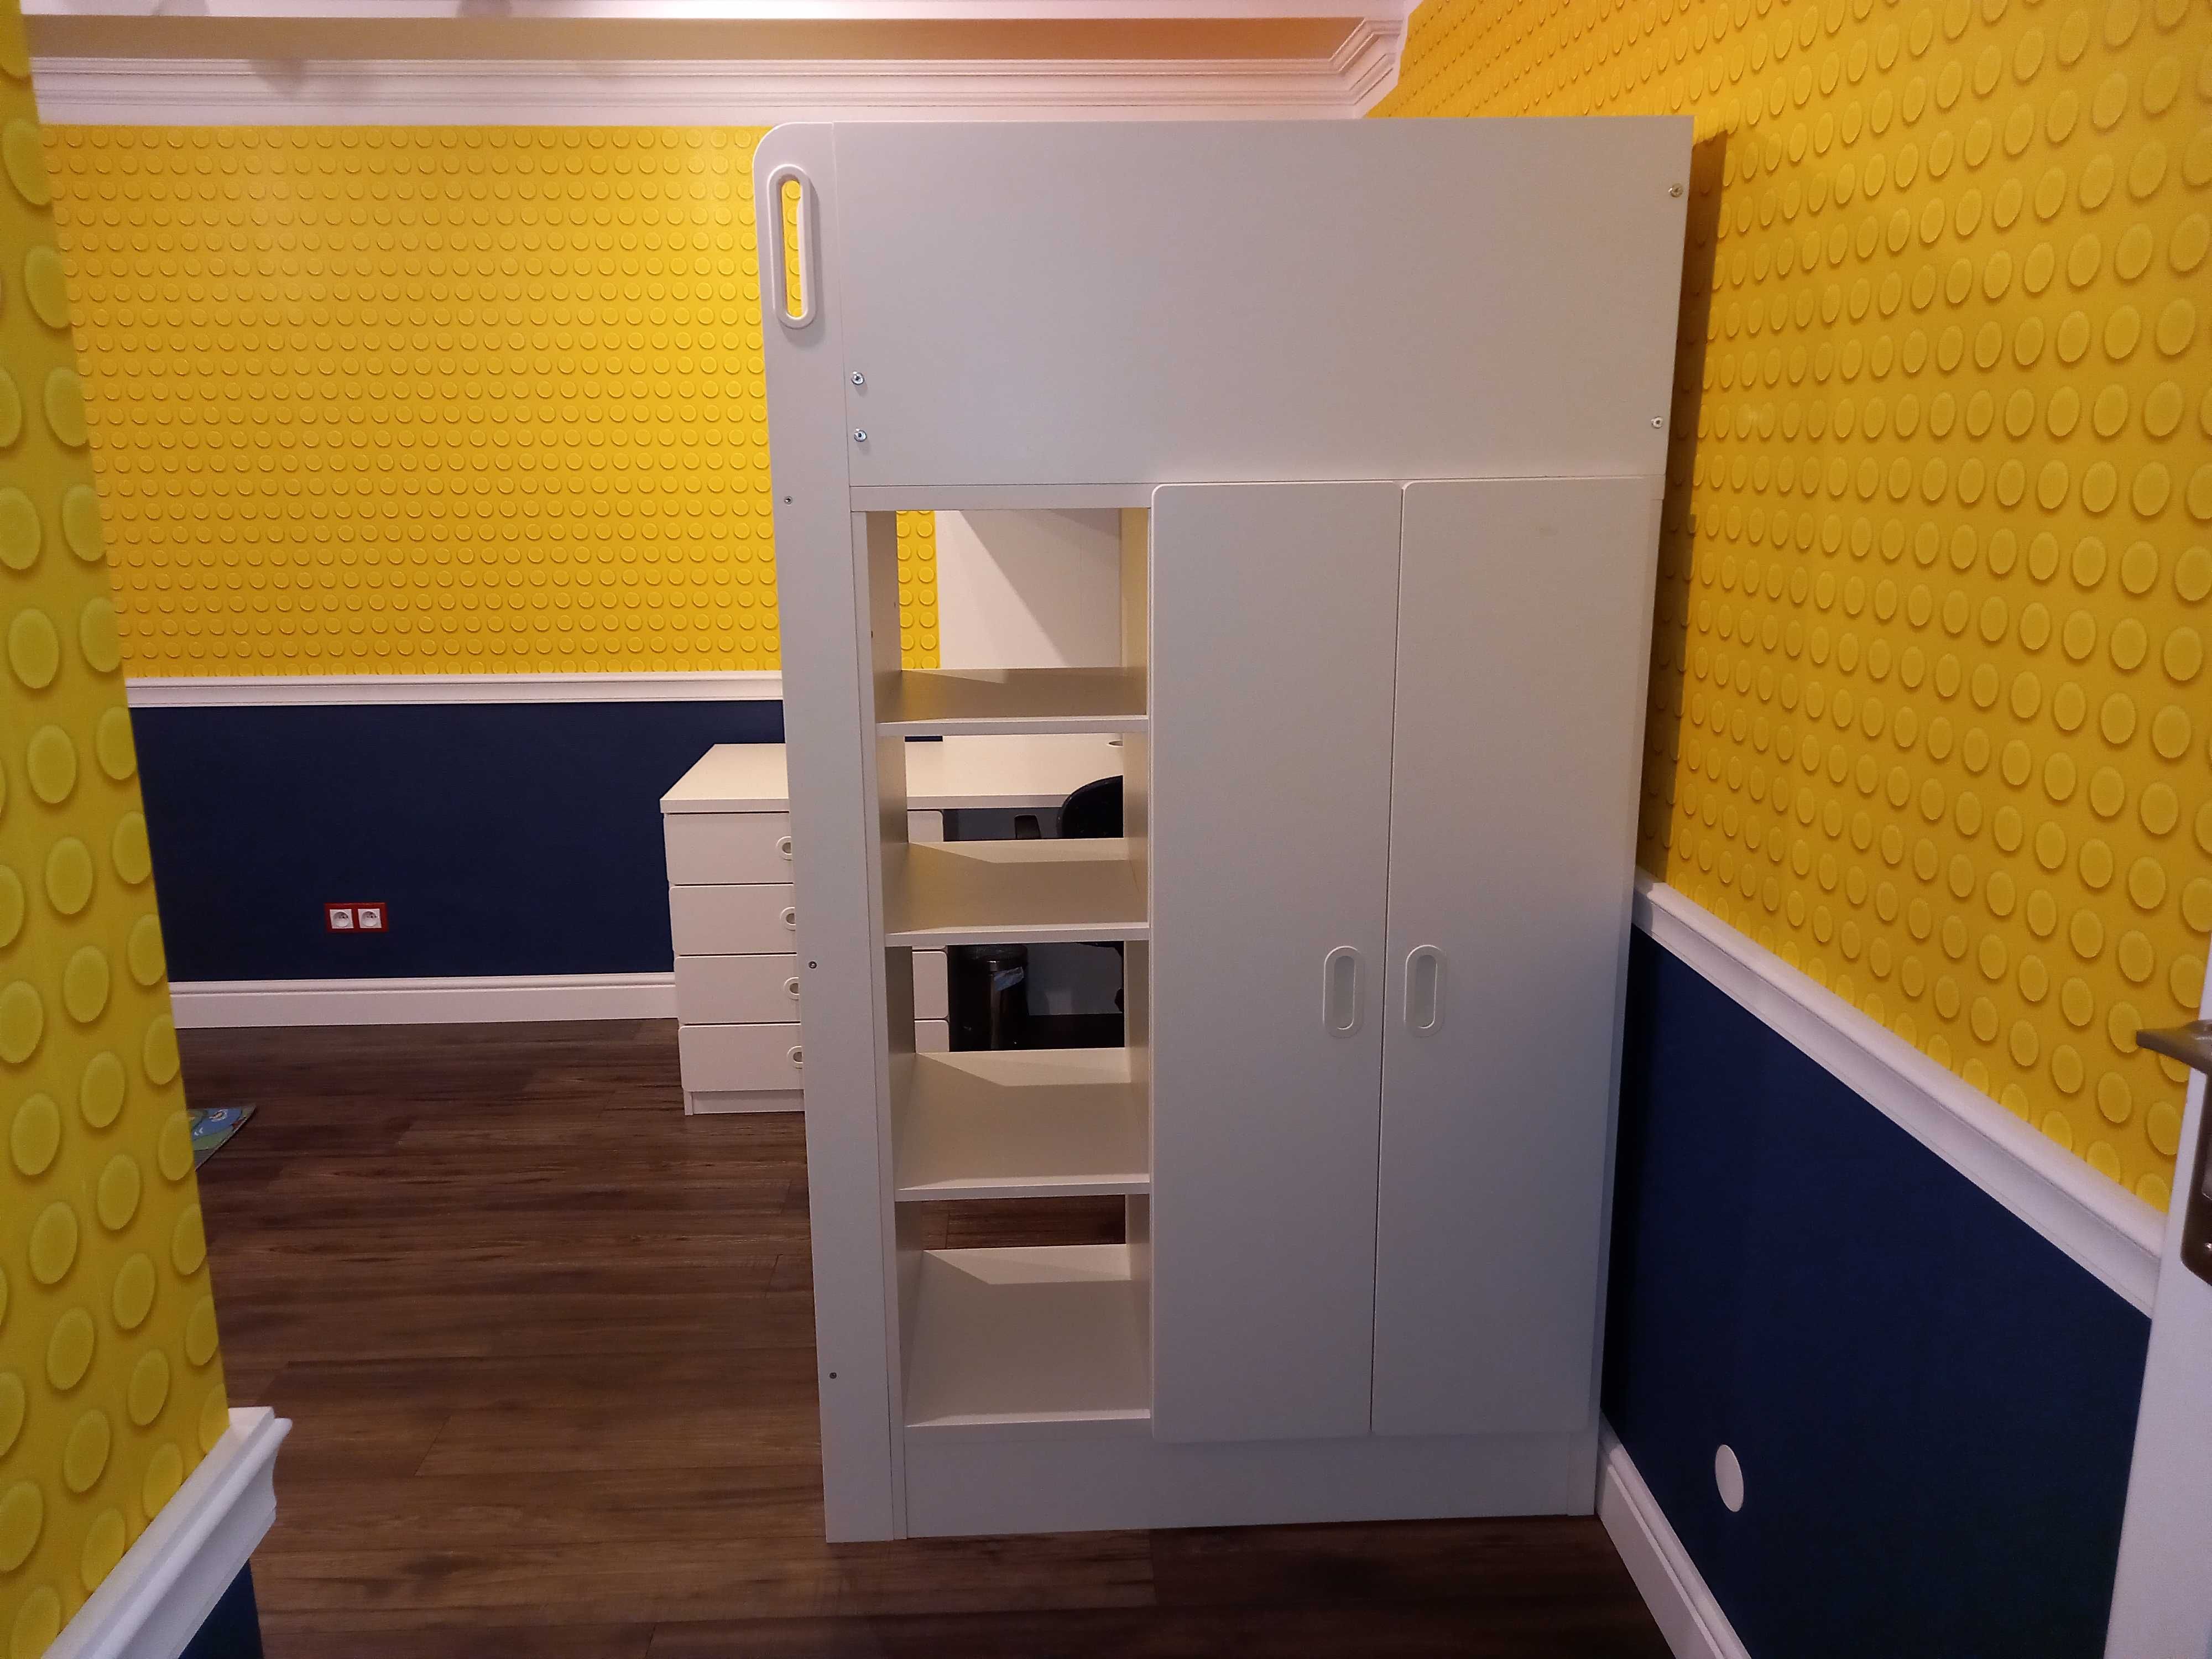 Łóżko piętrowe z biurkiem szufladami i szafą IKEA SMASTAD